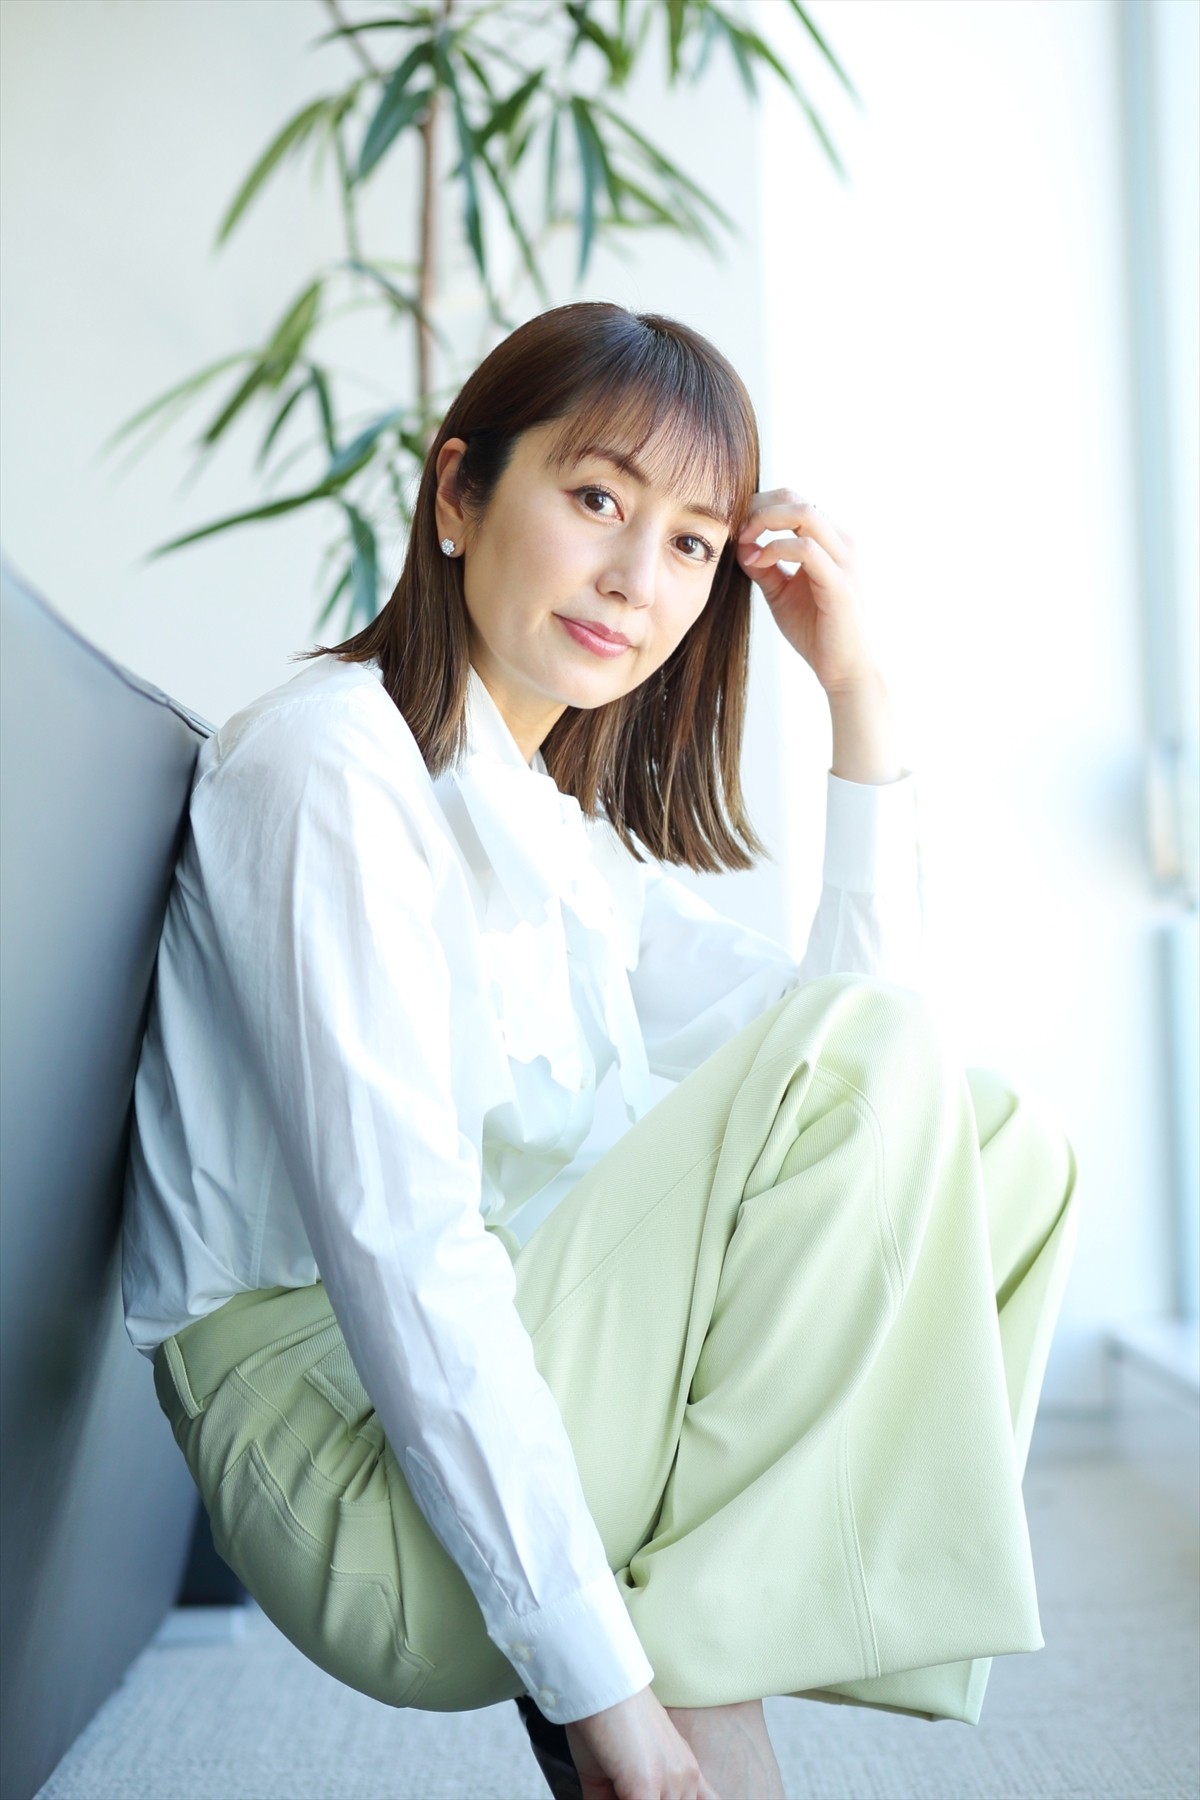 矢田亜希子、バラエティでの飾らない素顔が人気「20代、30代よりも今が一番楽しい」